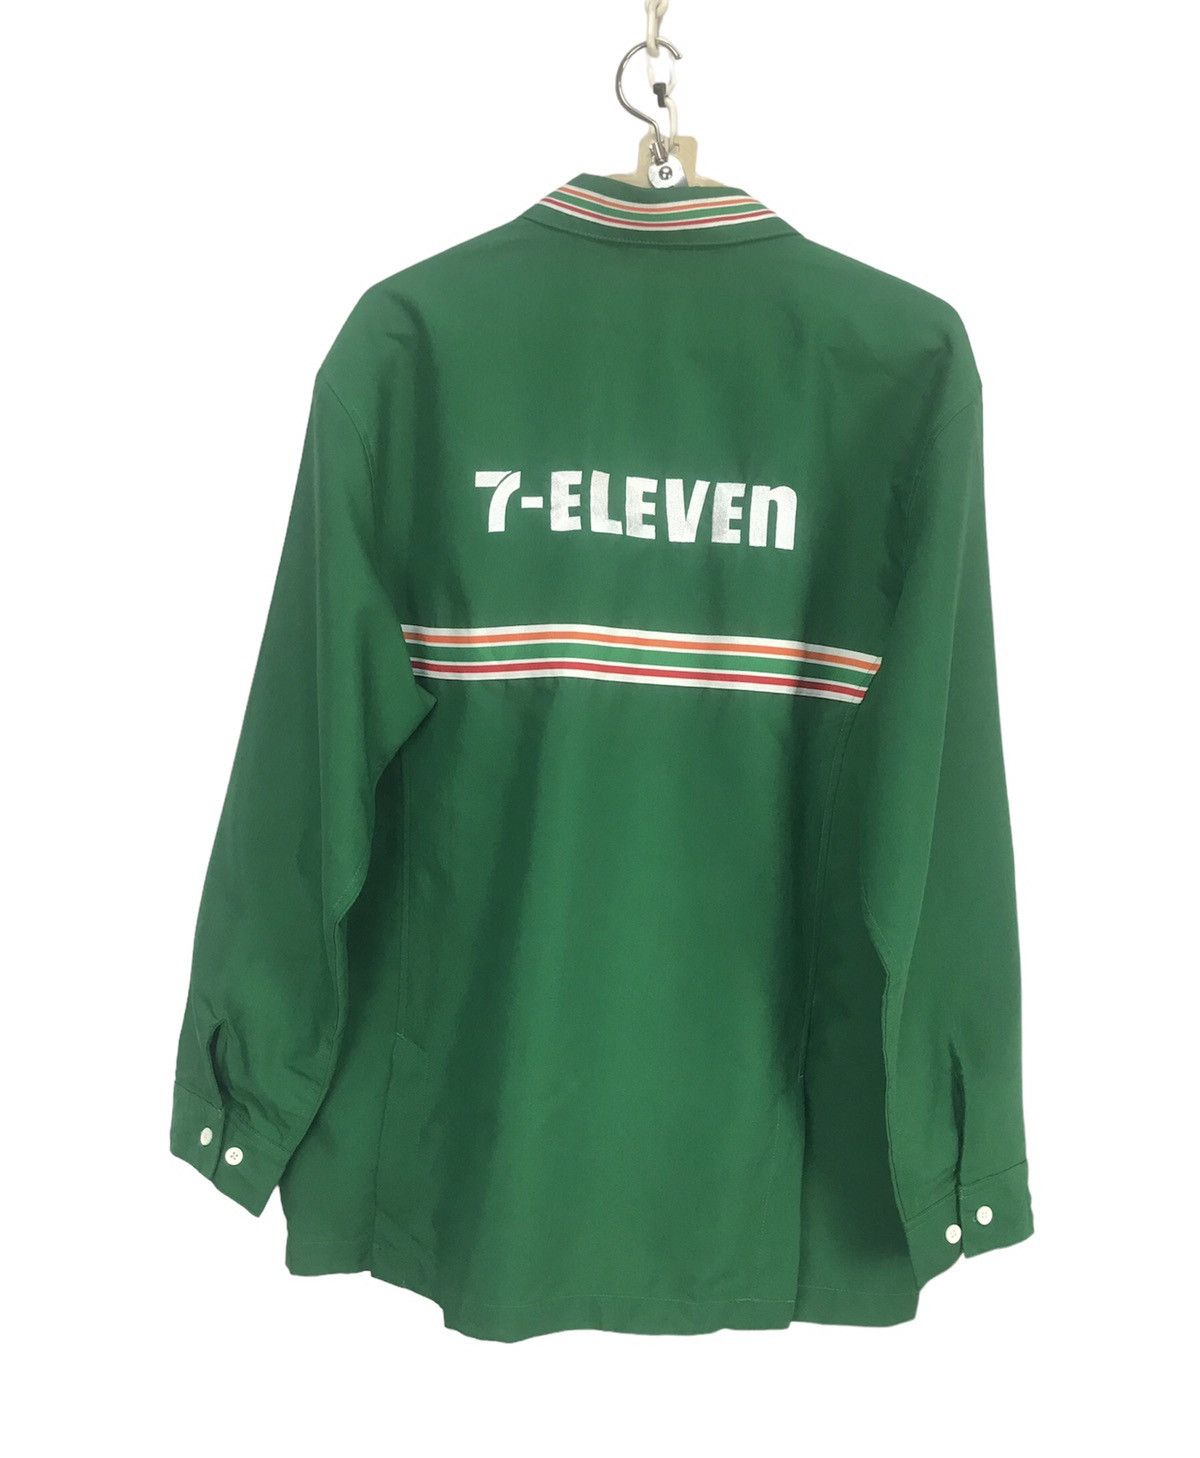 Vintage Vintage 7 eleven spellout zipper shirt Size US L / EU 52-54 / 3 - 2 Preview